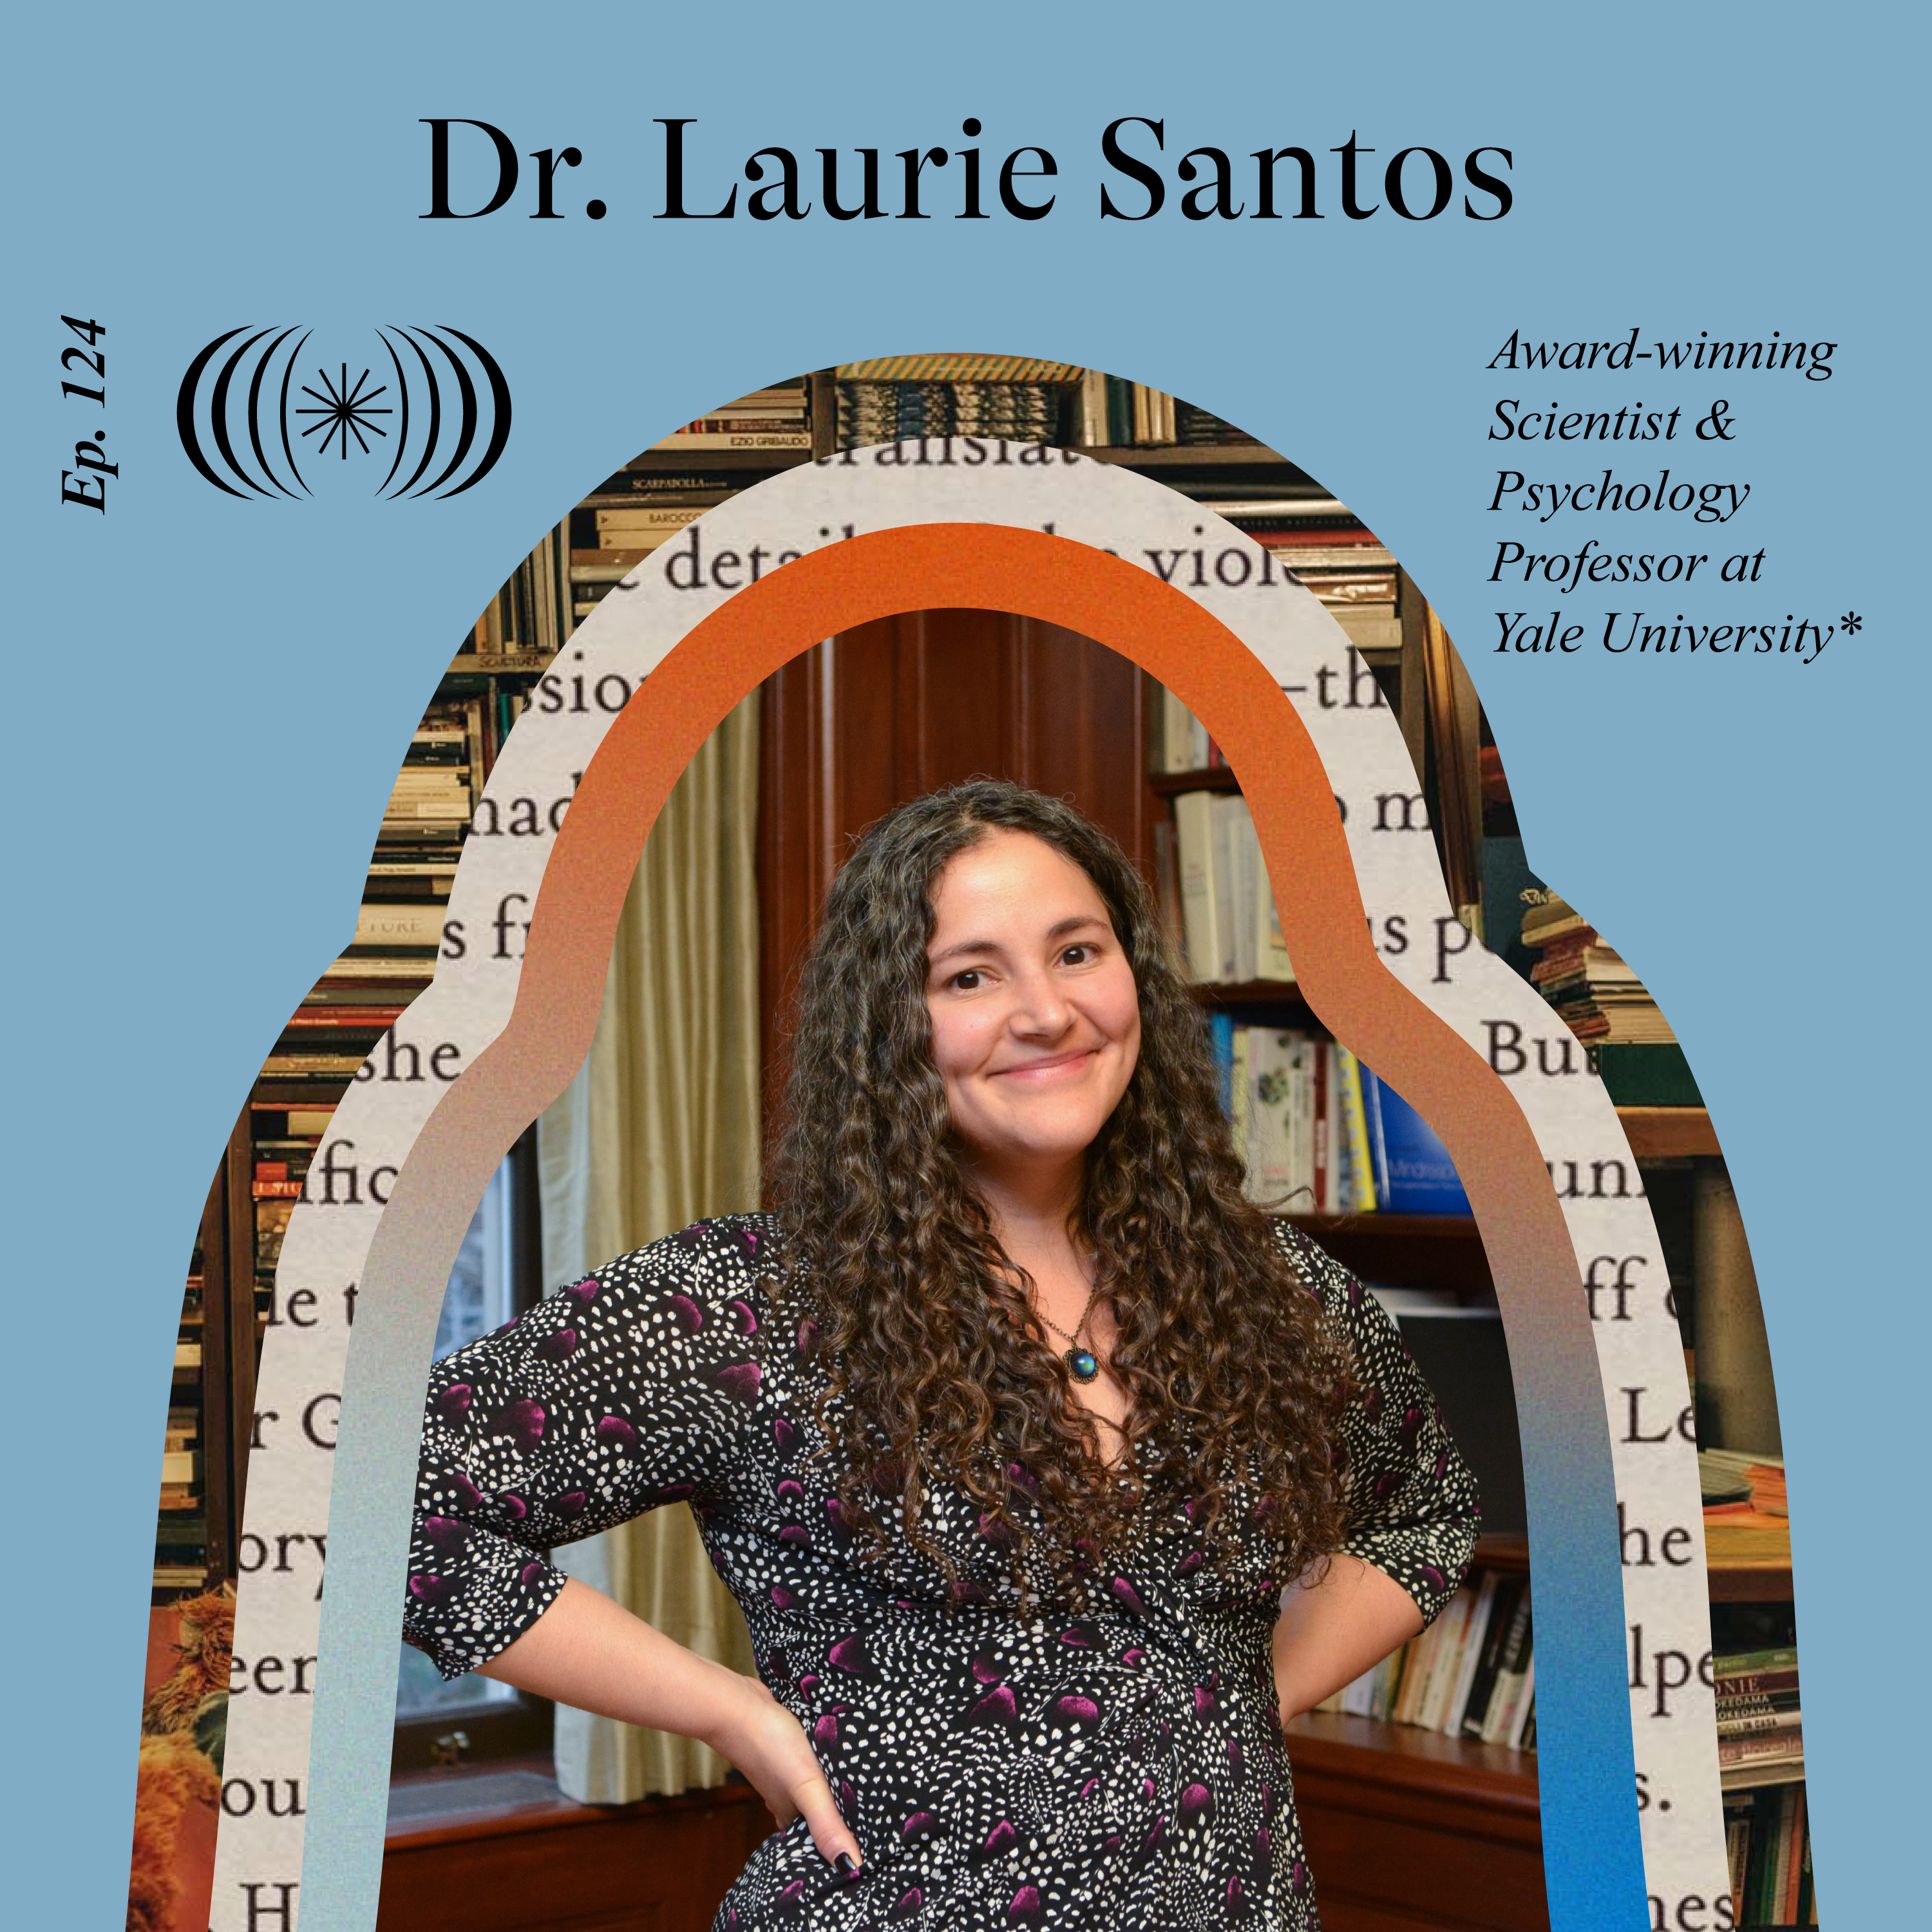 Dr. Laurie Santos